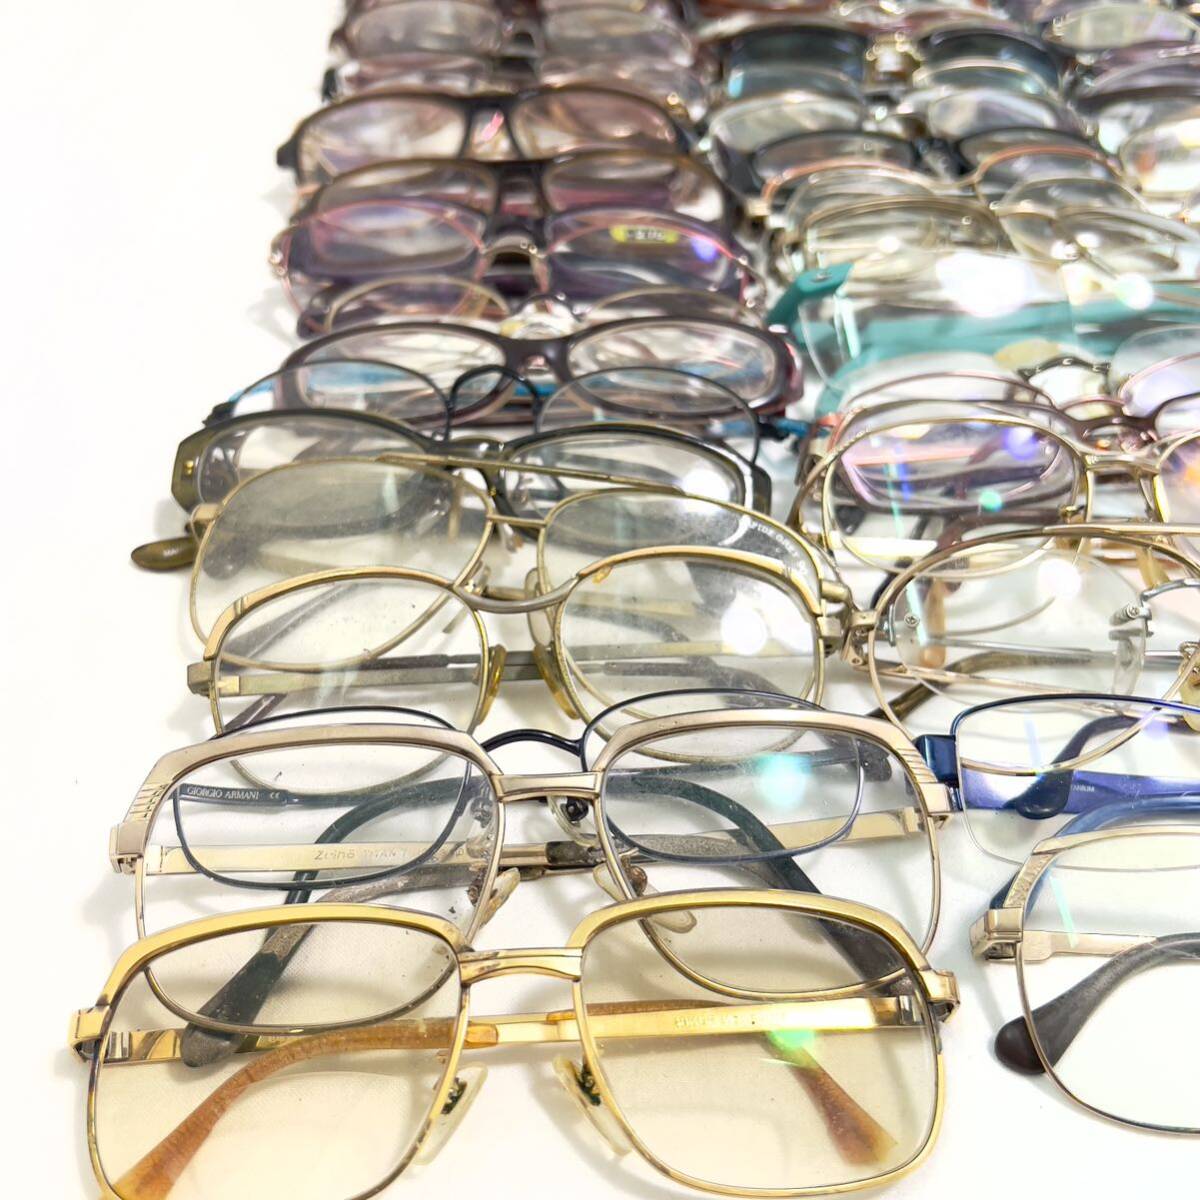  Junk очки очки рама 200 пункт и больше продажа комплектом ⑤ 999.9 Yves Saint-Laurent Burberry и т.п. солнцезащитные очки совместно много комплект 